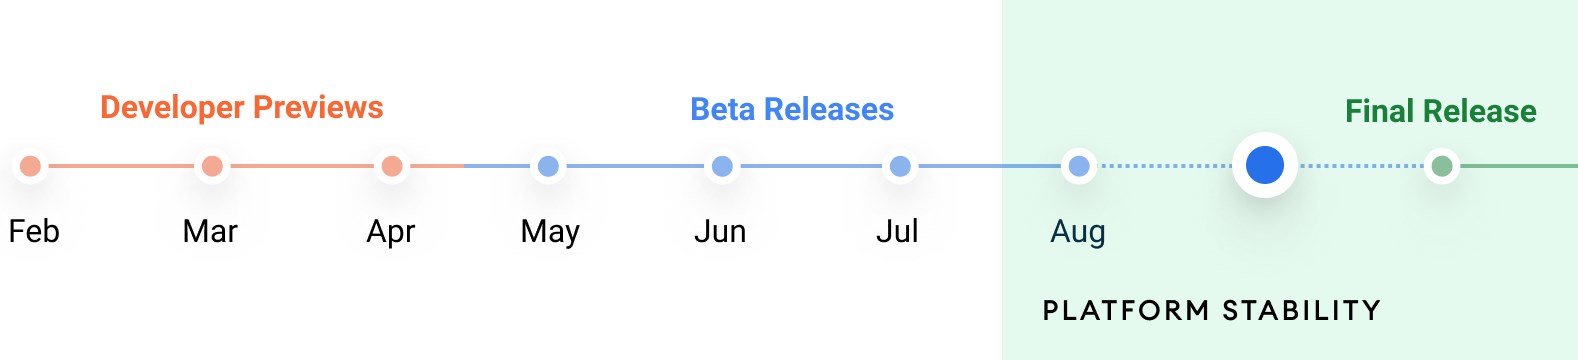 Android 12 Beta 5 yayınlandı: Final sürüm geliyor